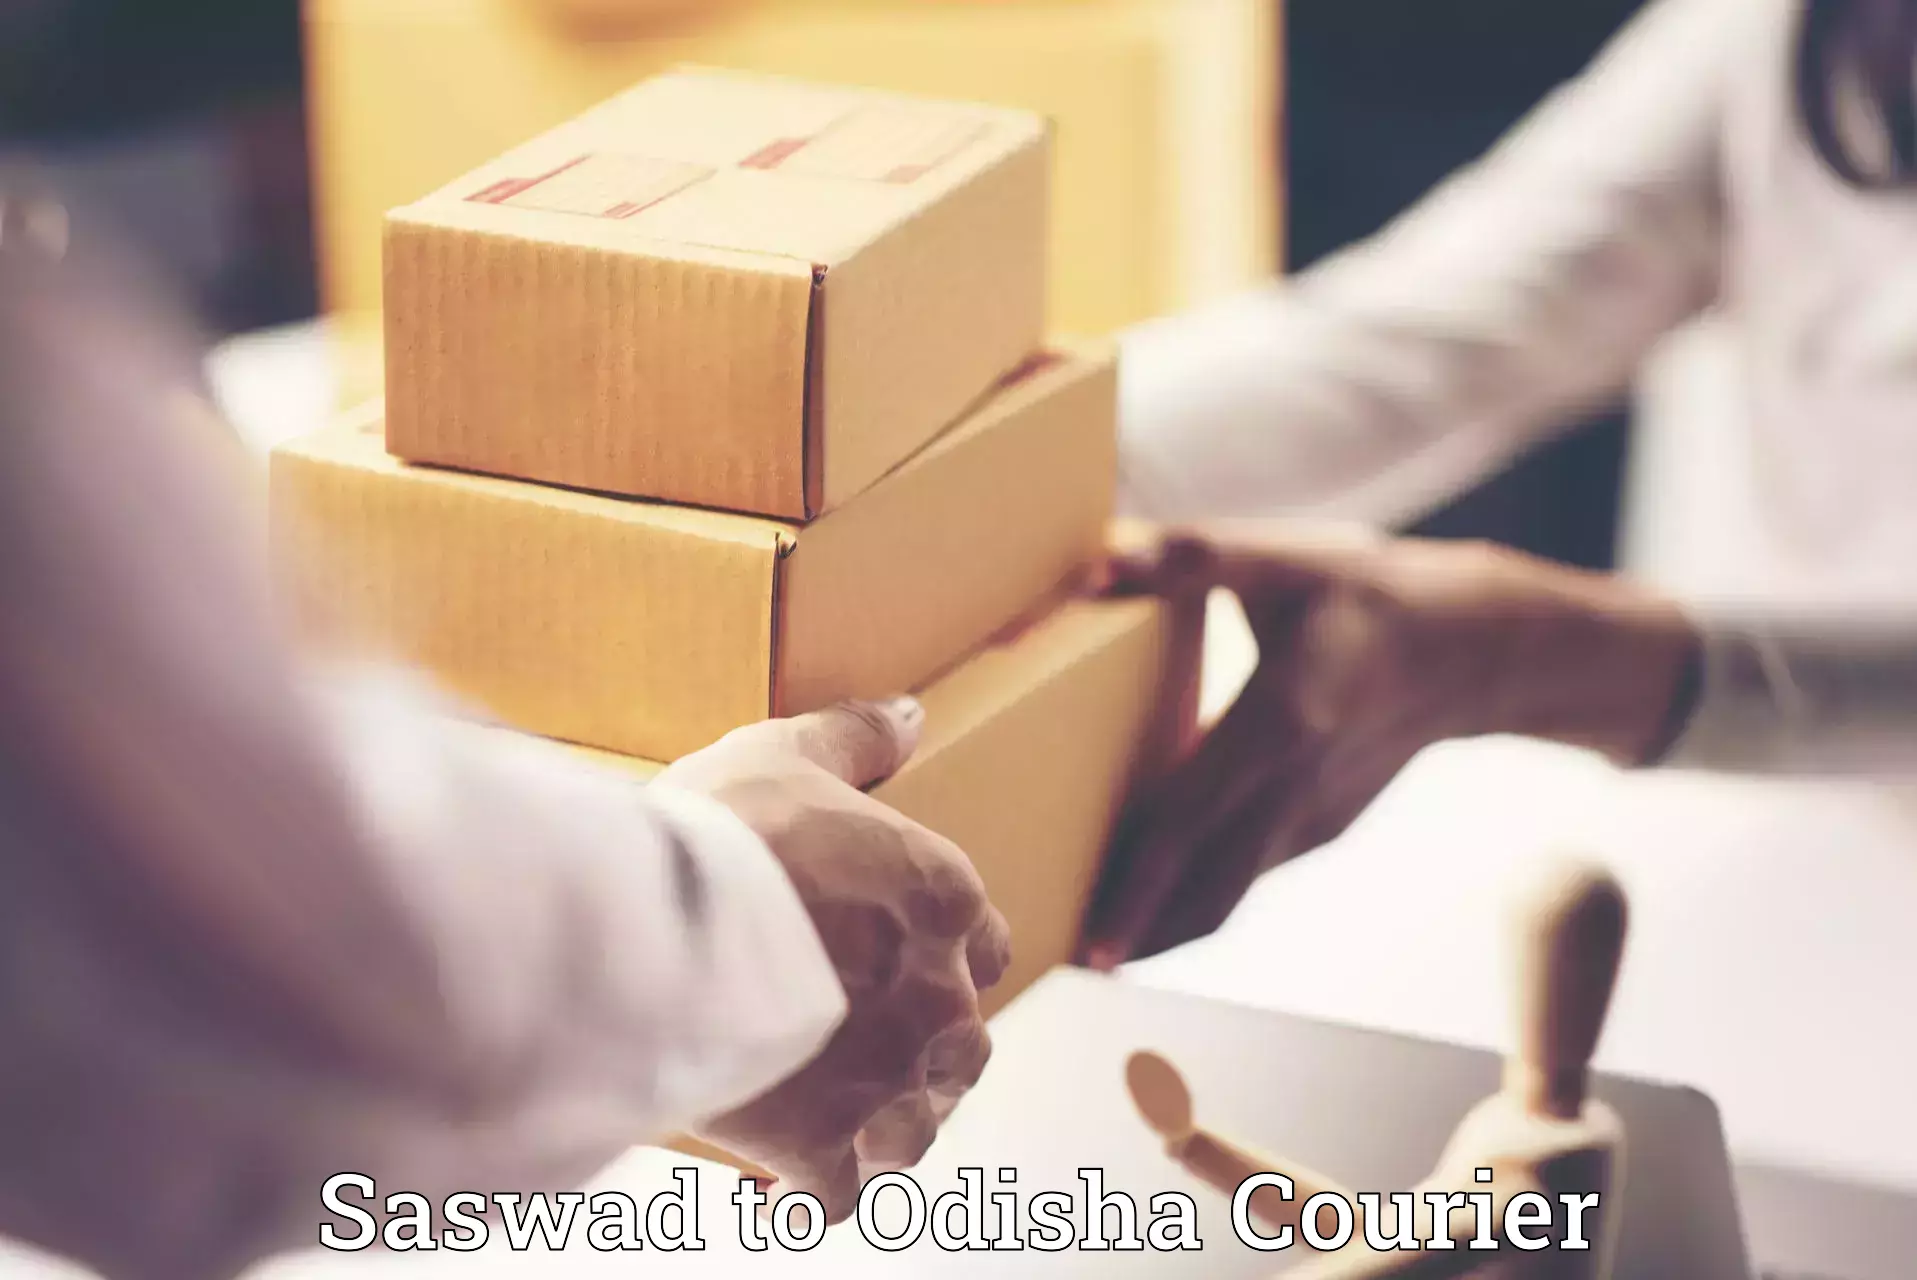 Online luggage shipping booking Saswad to Udayagiri Kandhamal